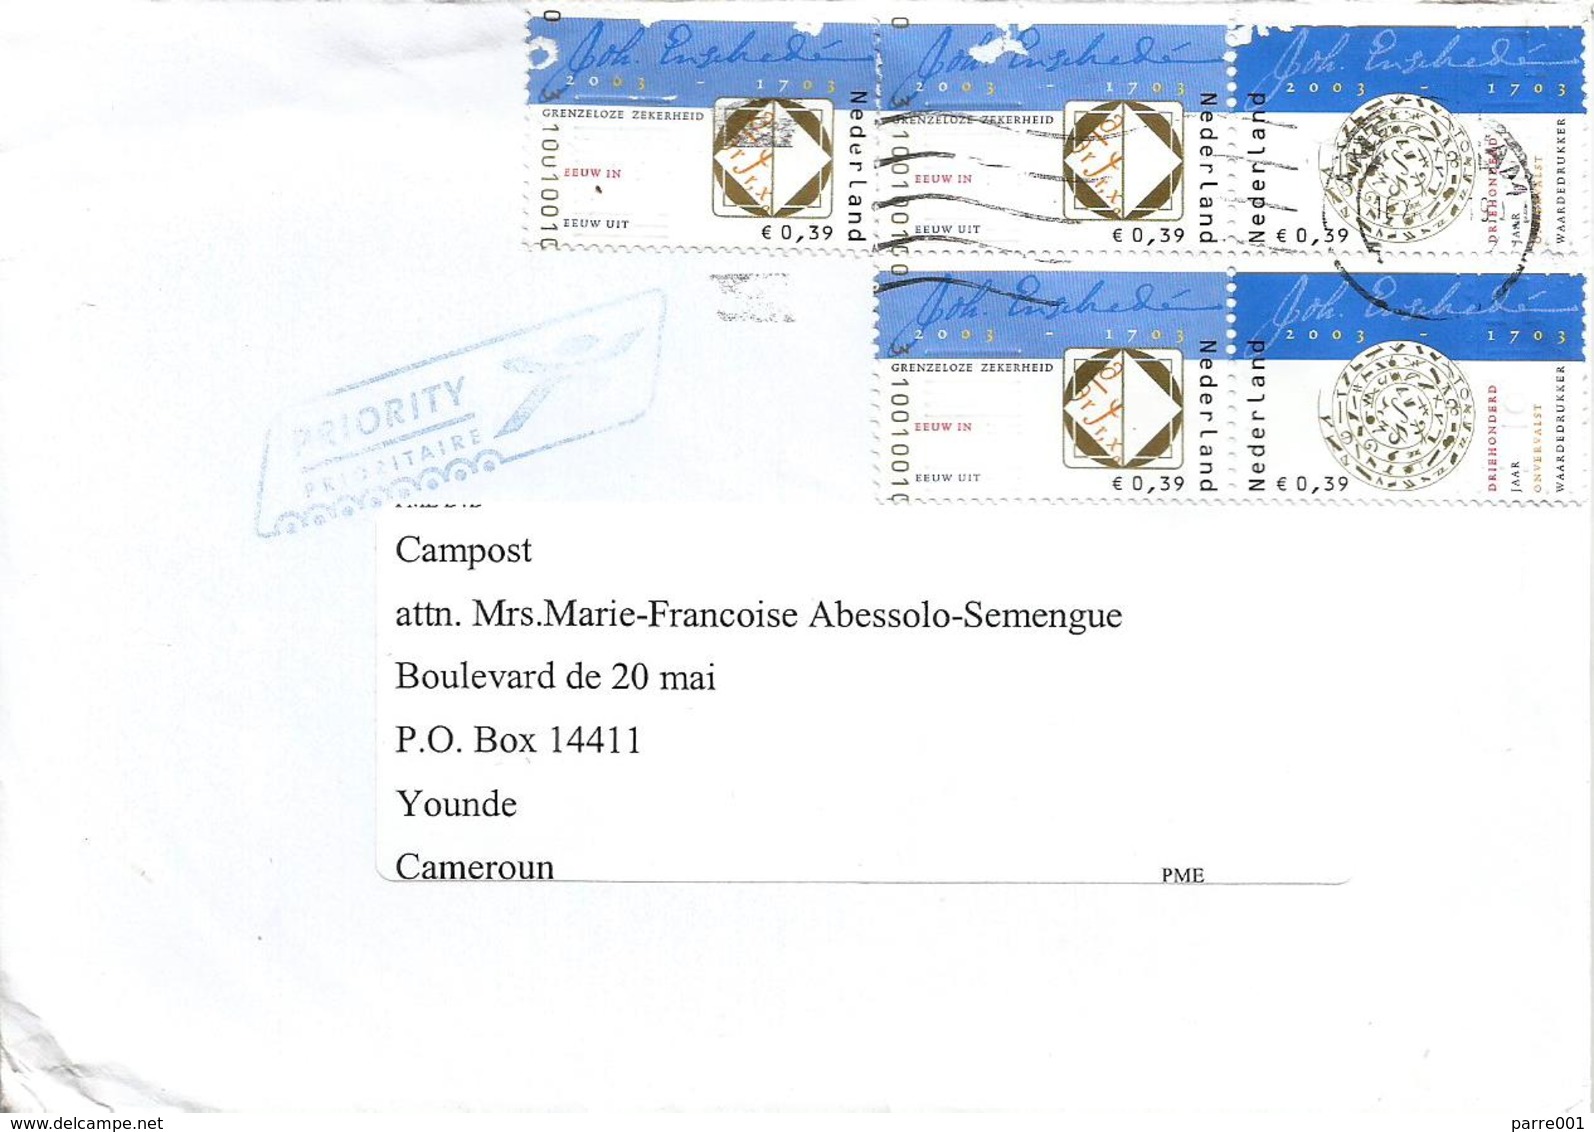 Nederland Netherlands 2010 Amsterdam Royal Joh. Enschedé Printers Xmas Cover To Cameroun - Briefe U. Dokumente